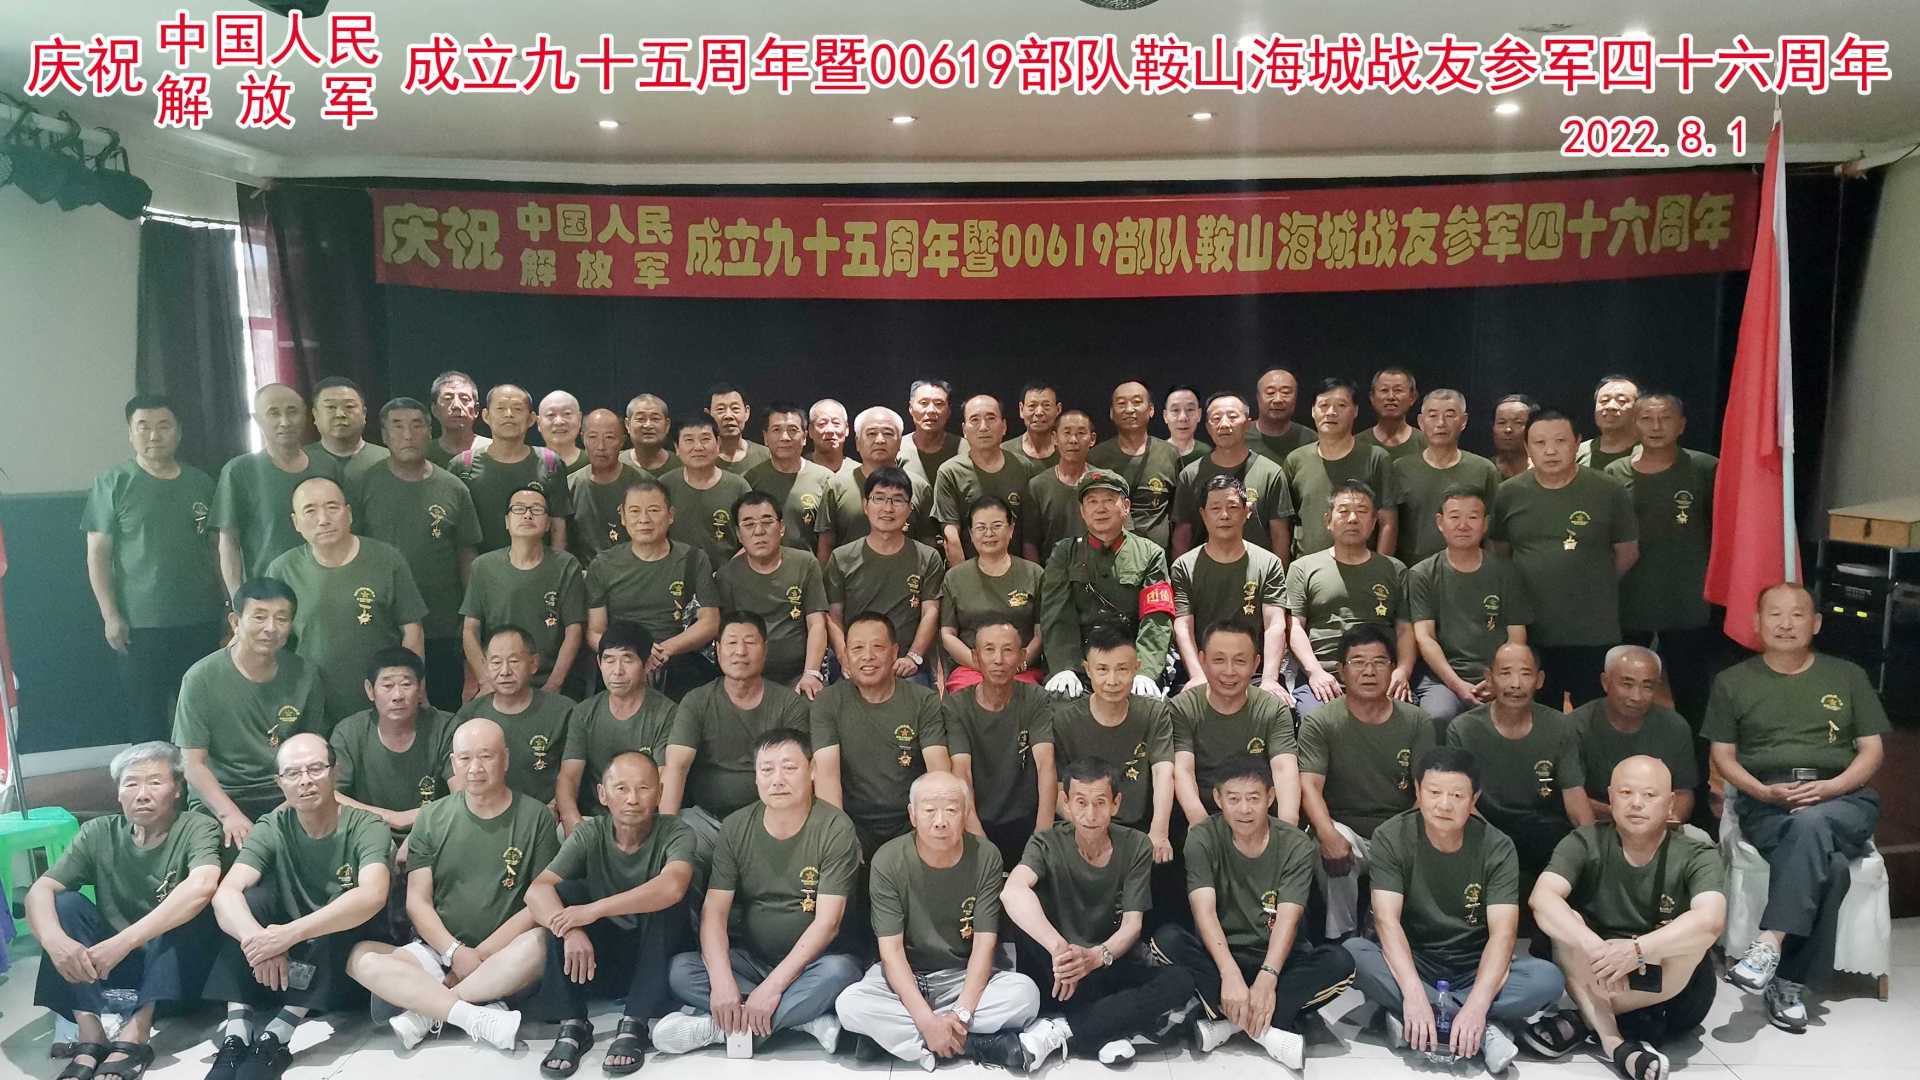 庆祝中国人民解放军成立九十五周年暨00619部队鞍山海城战友参军四十六周年